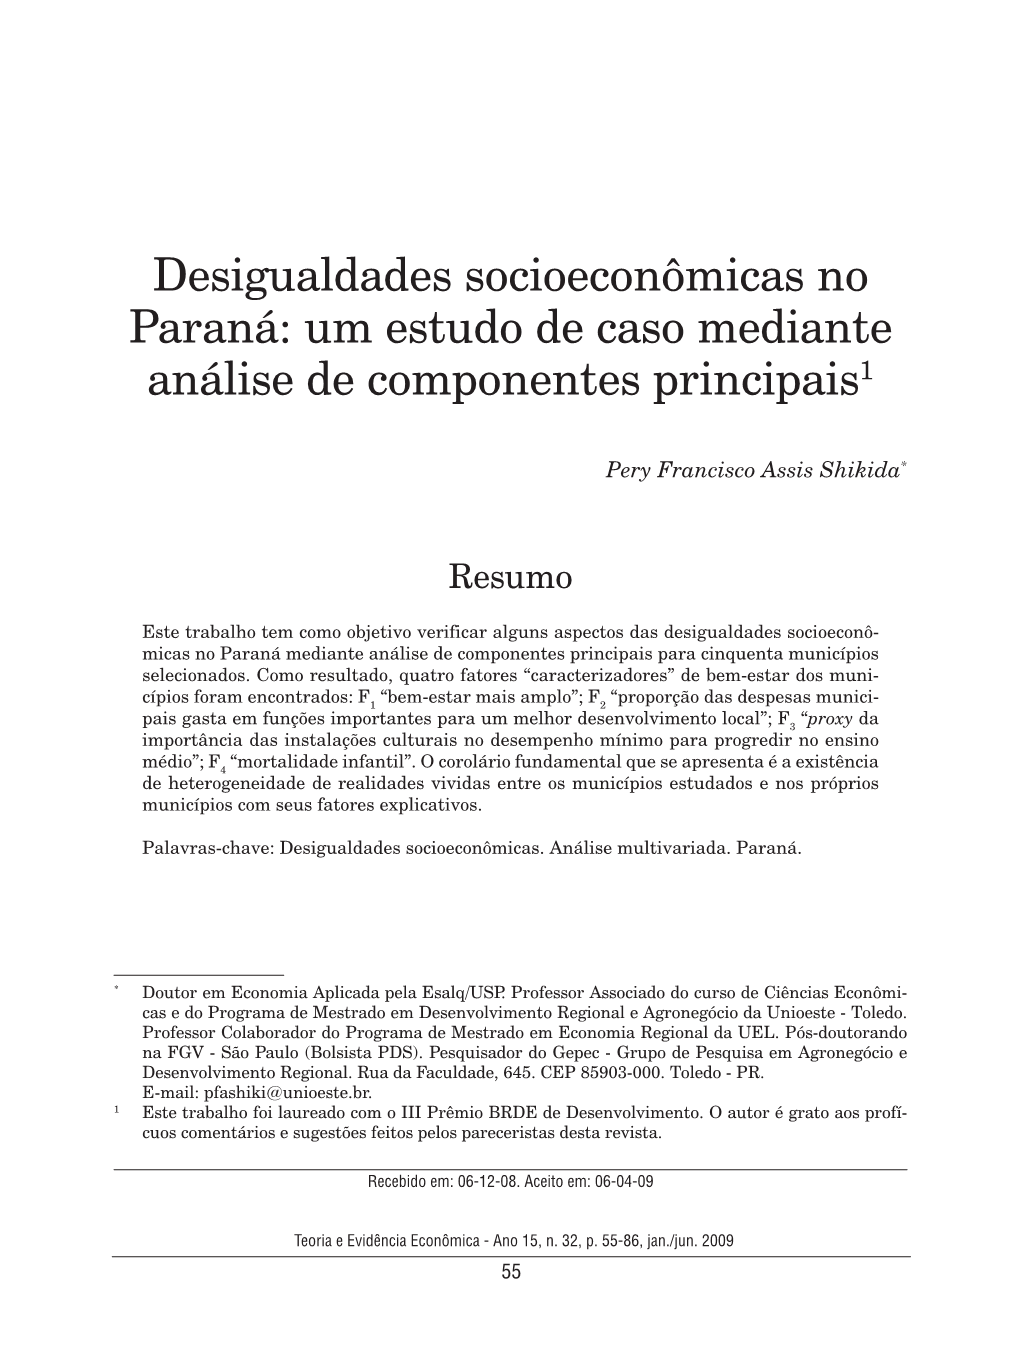 Desigualdades Socioeconômicas No Paraná: Um Estudo De Caso Mediante Análise De Componentes Principais1